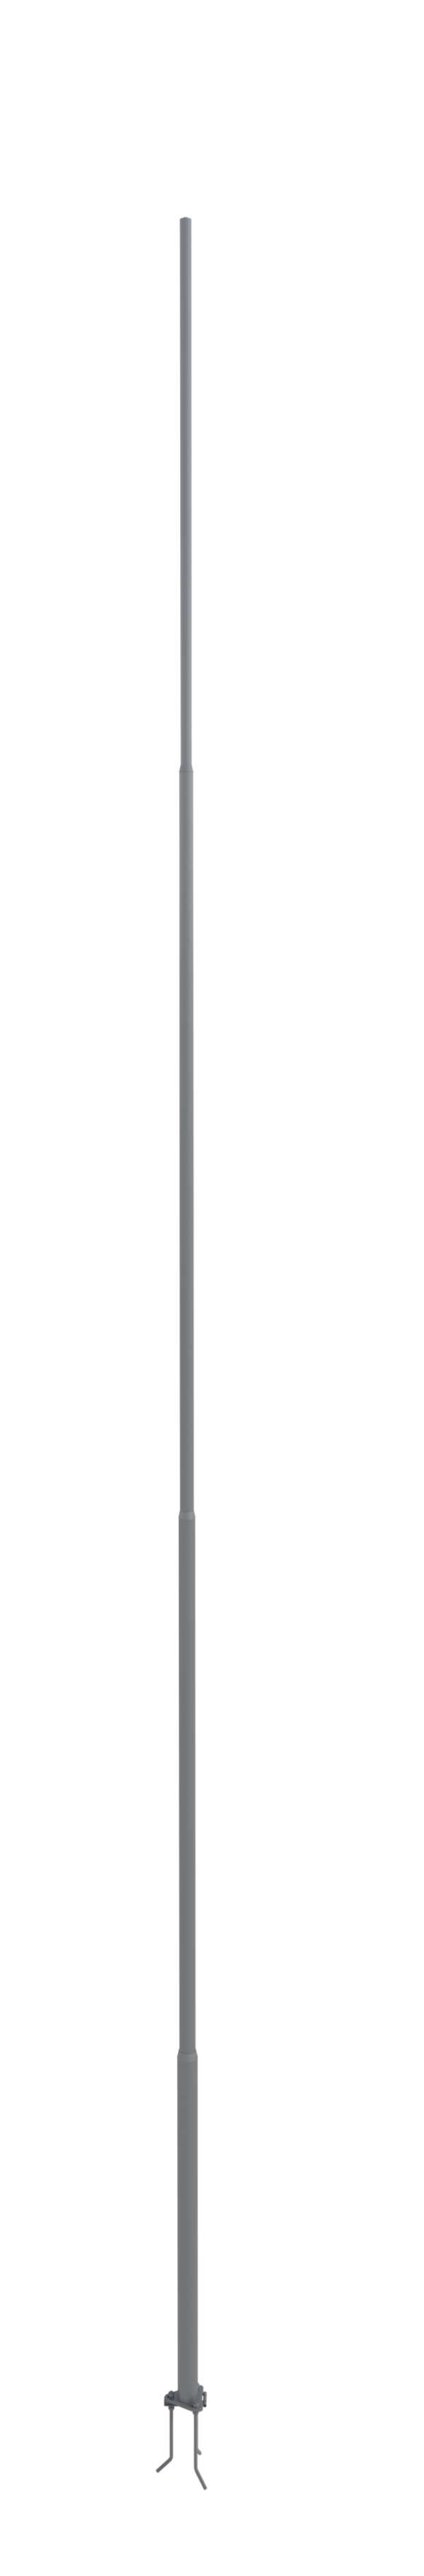 NordWerk МСАА-14 — Молниеотвод высотой 14 метров для активных молниеприемников (алюминий)